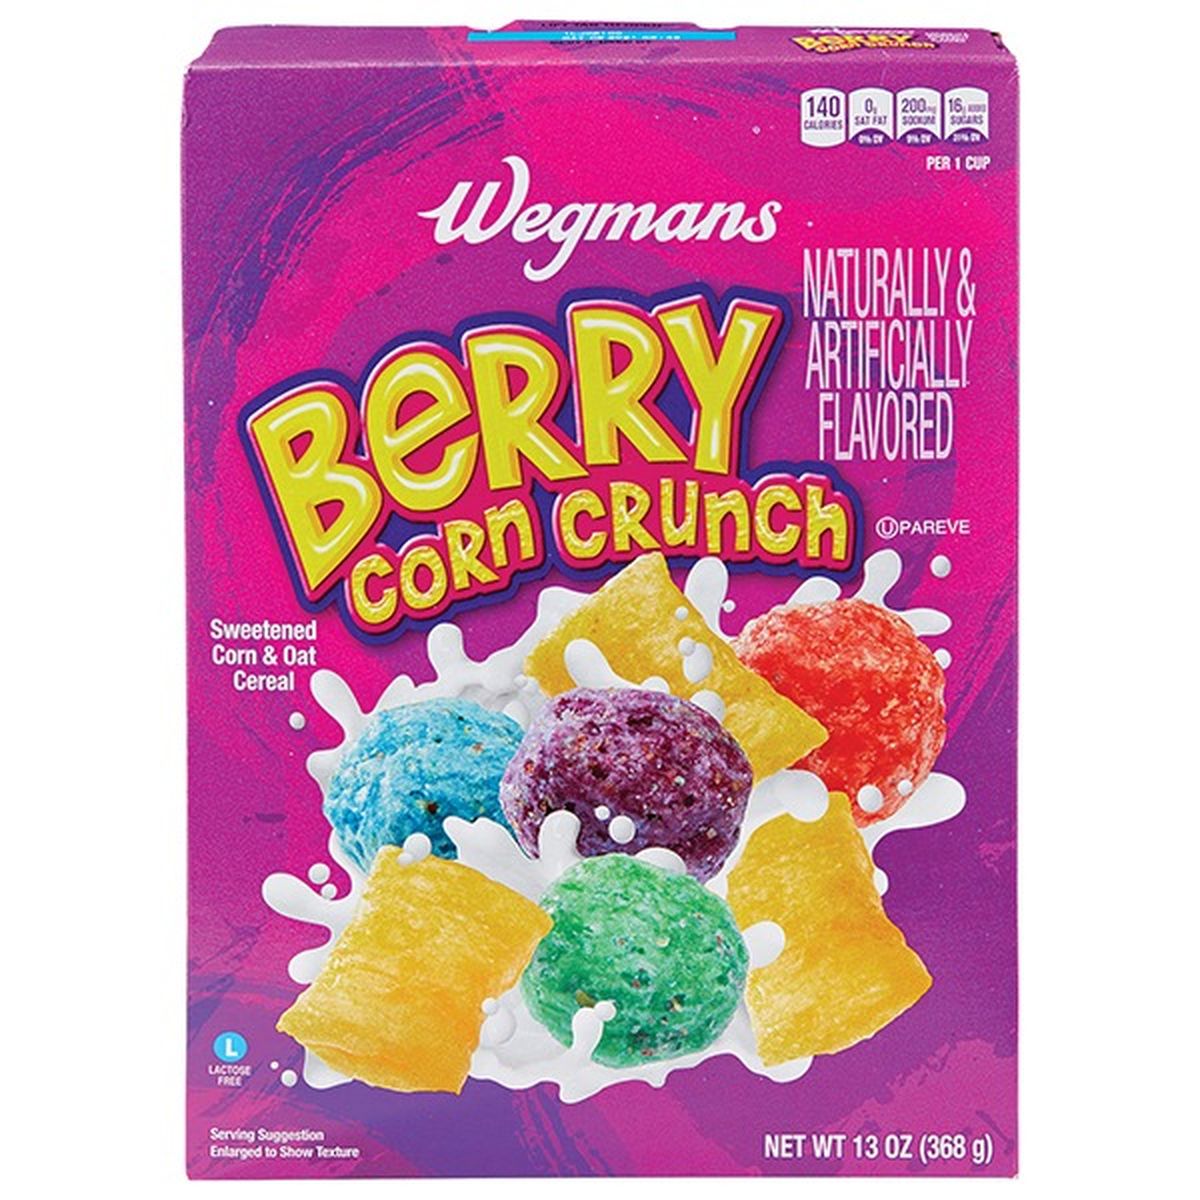 Calories in Wegmans Berry Corn Crunch Cereal